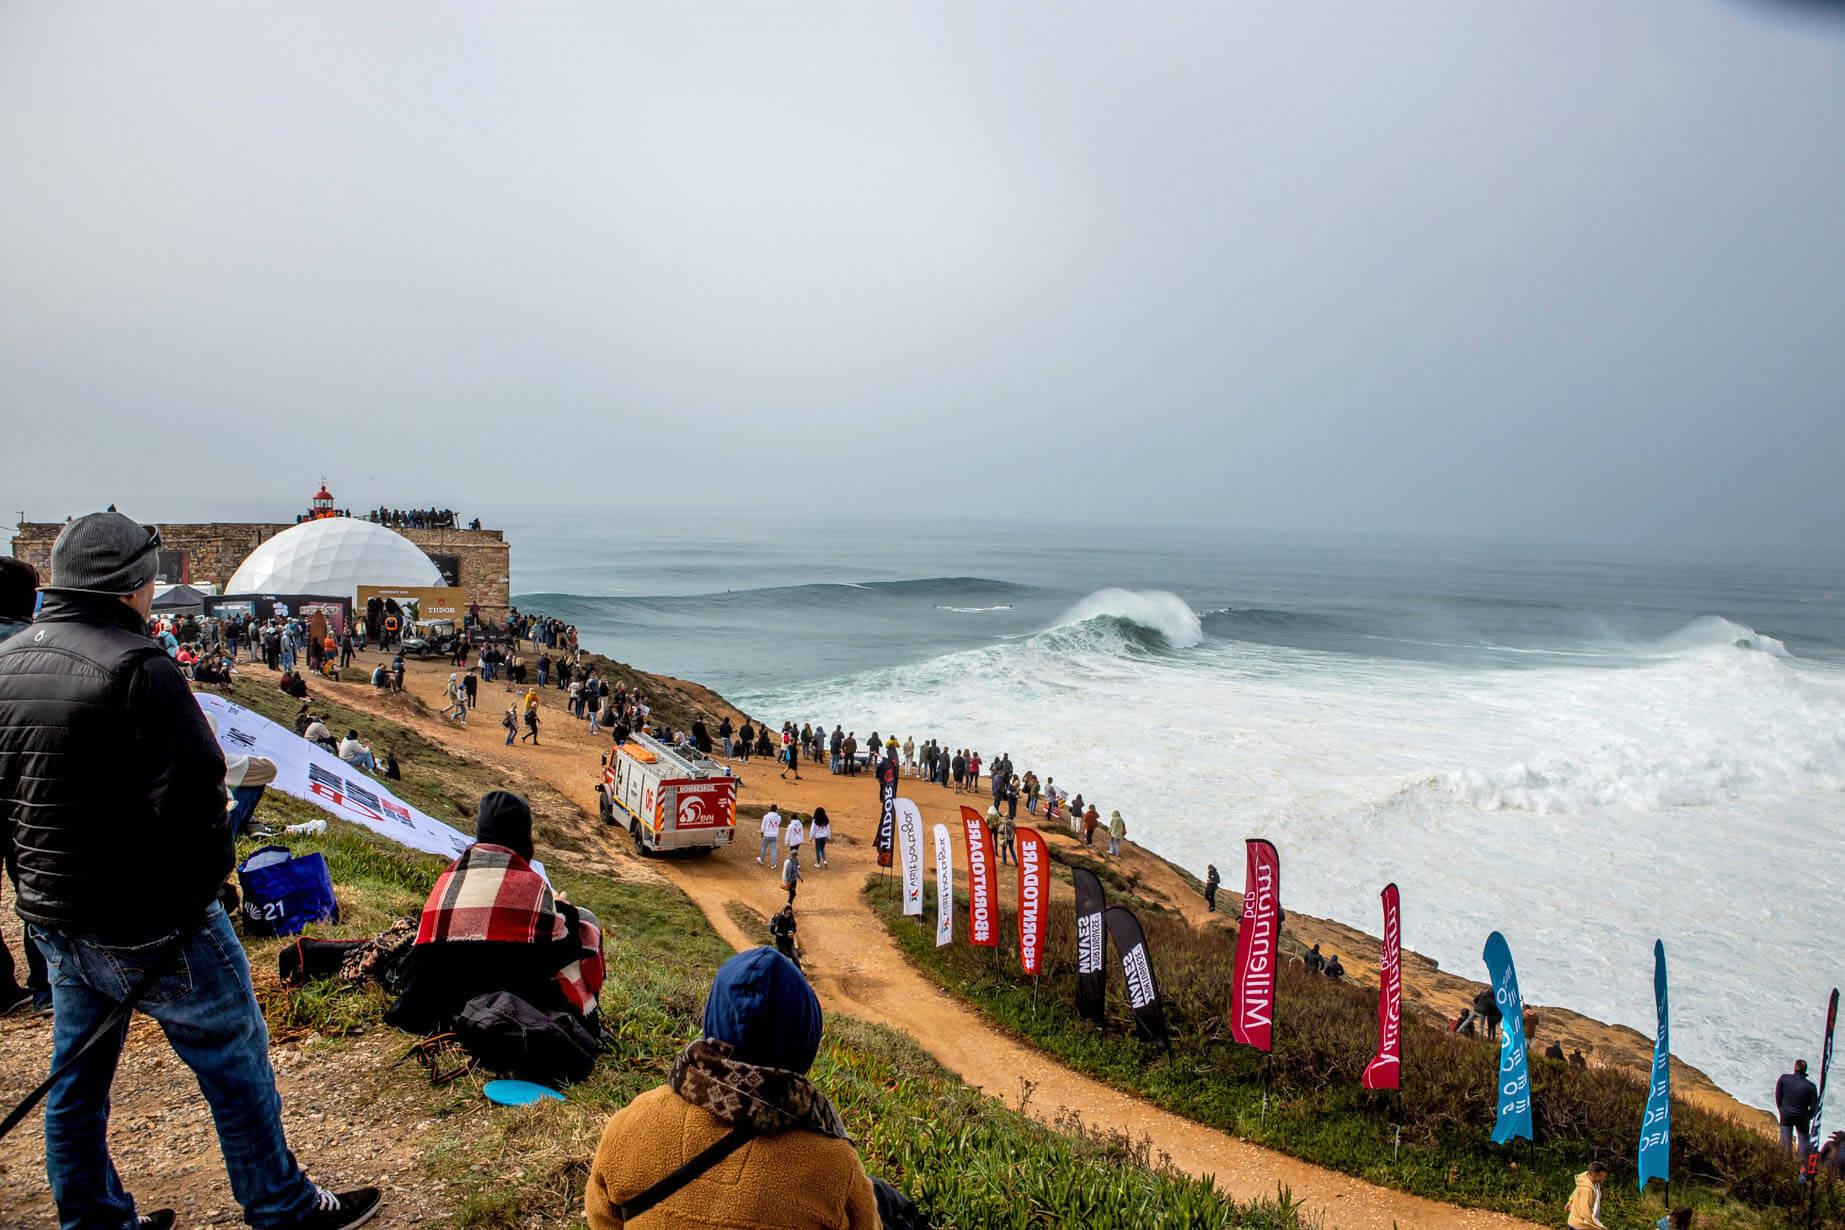 Naturschauspiel: Die Surf-Events in Nazaré ziehen viele Zuschauer an